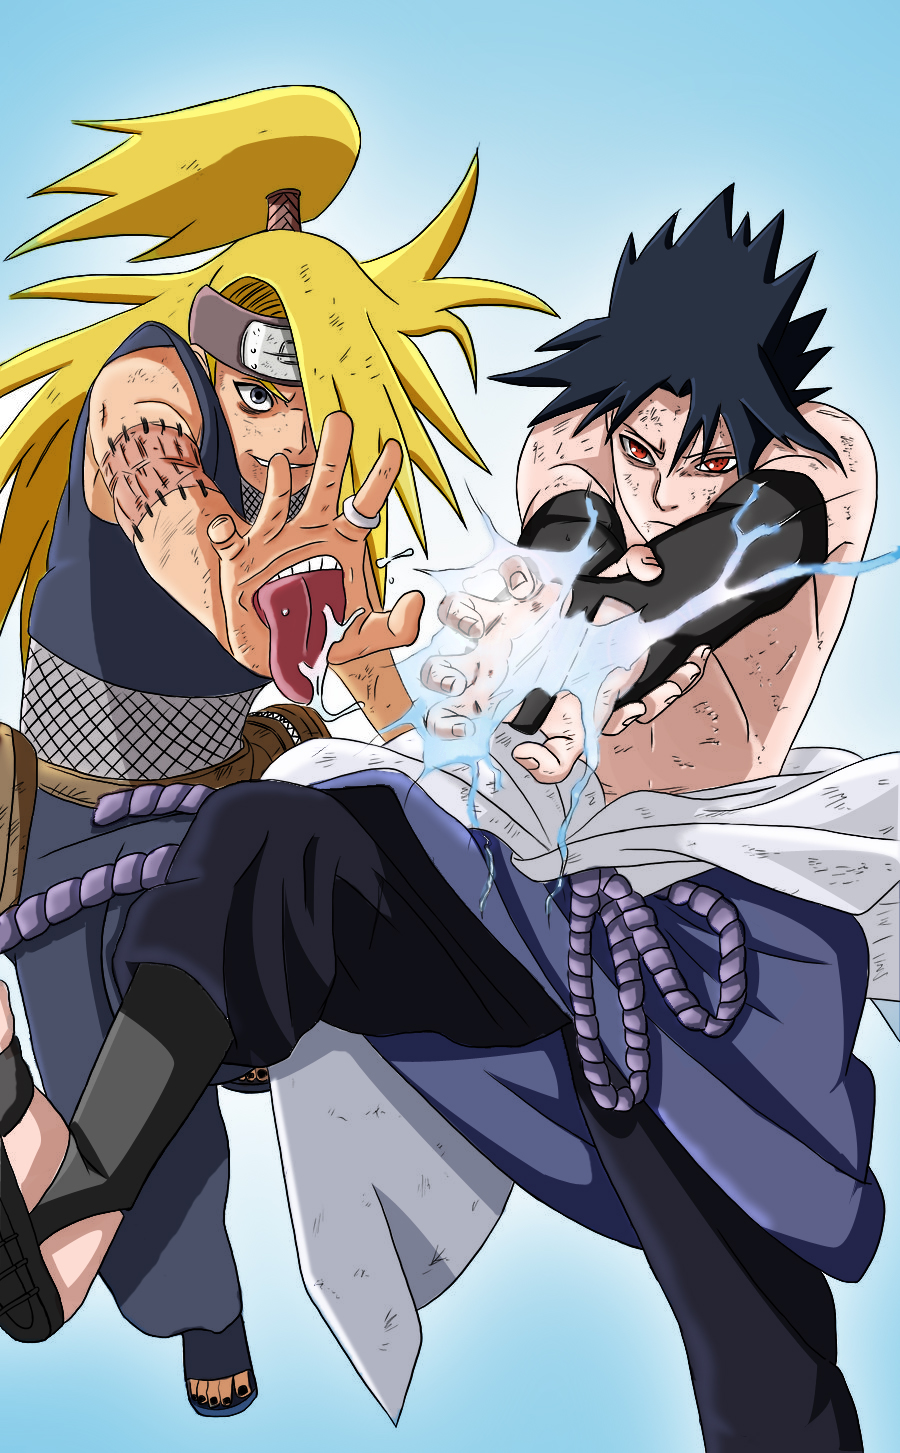 Deidara vs. Sasuke Naruto Shippuuden Photo (24211018) Fanpop.